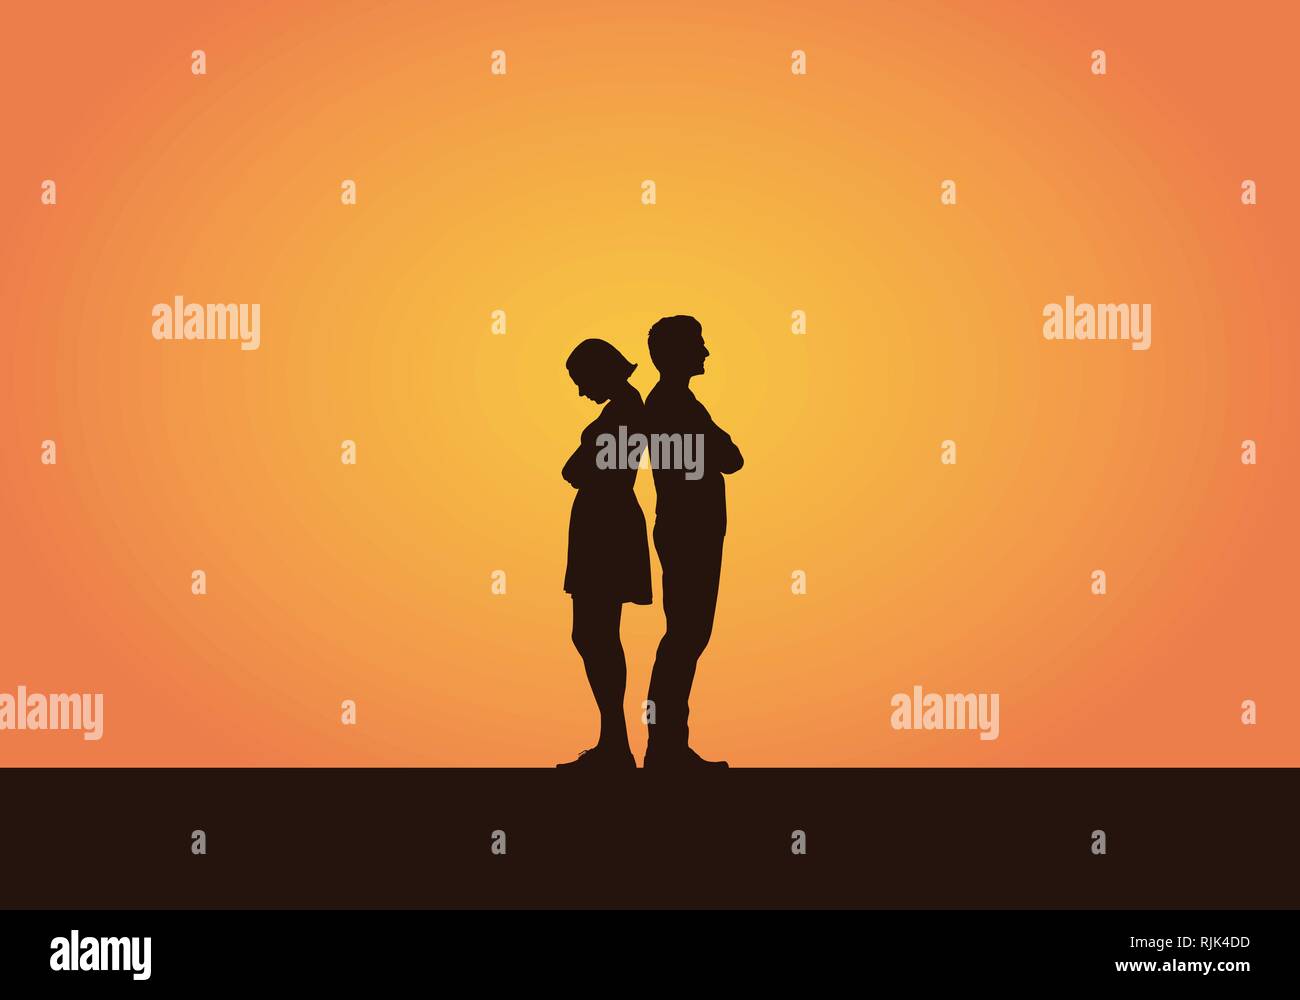 Realistische Darstellung eines Silhouette von ein paar junge Leute, Männer und Frauen, die nach einem Streit oder Unstimmigkeiten. Auf orangem Hintergrund getrennt. Stock Vektor